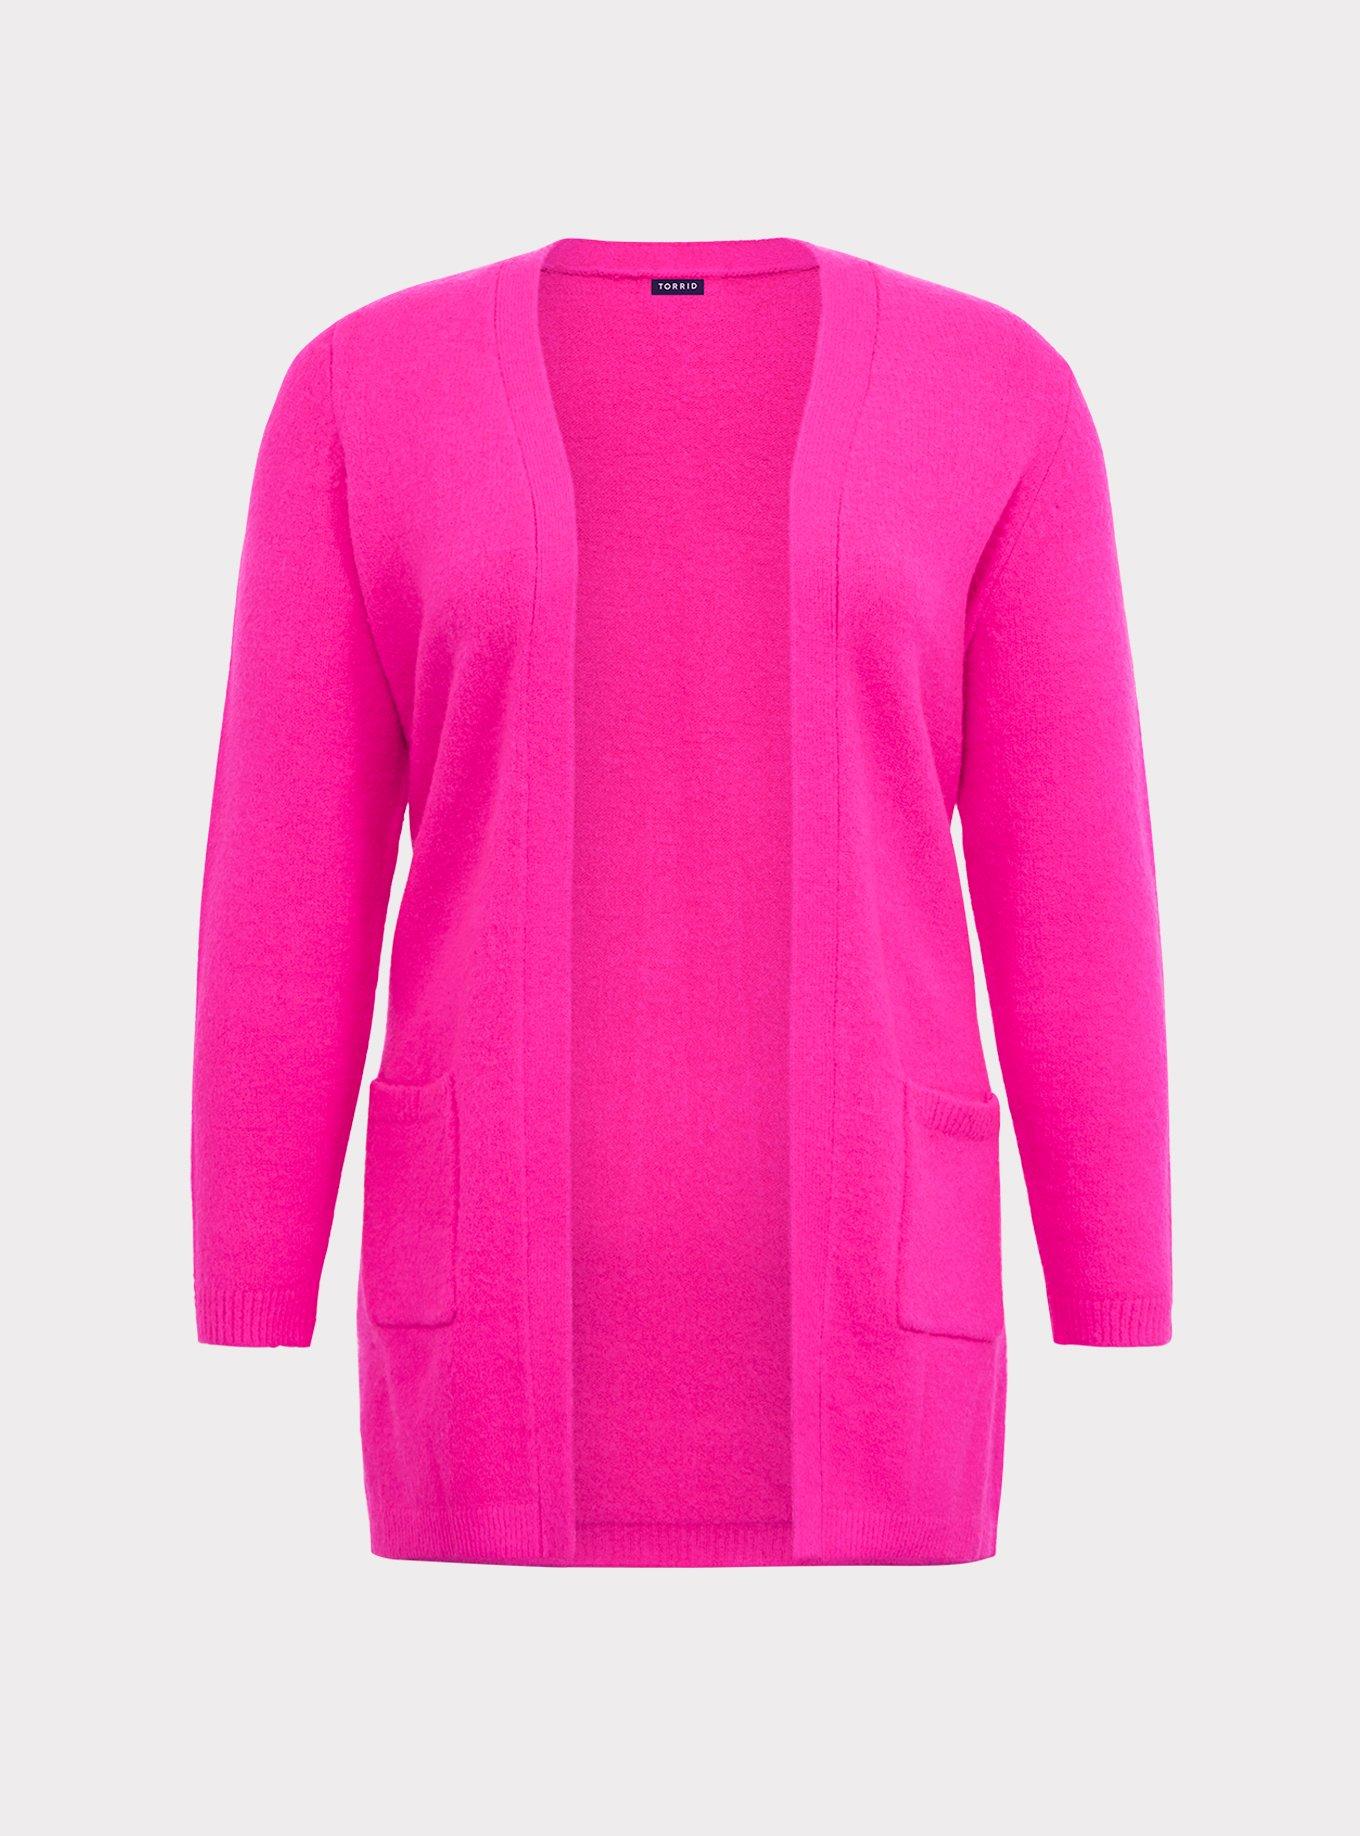 Plus Size - Cardigan Open Front Longline Sweater - Torrid